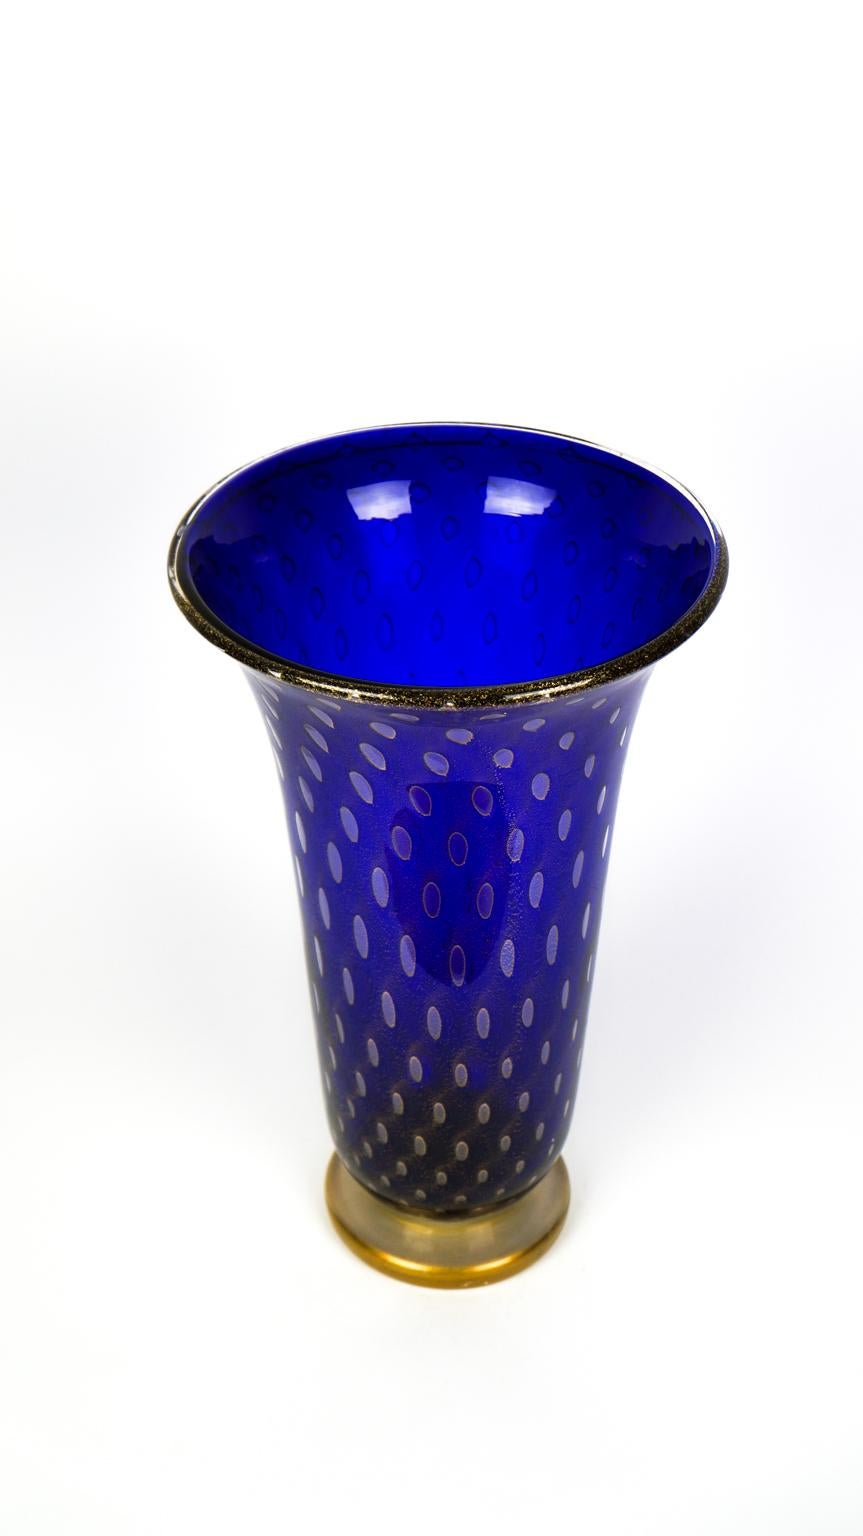 Art Deco Blue Gold Design Italian Art Glass Vase by Stefano Mattiello In New Condition For Sale In Murano, Venezia